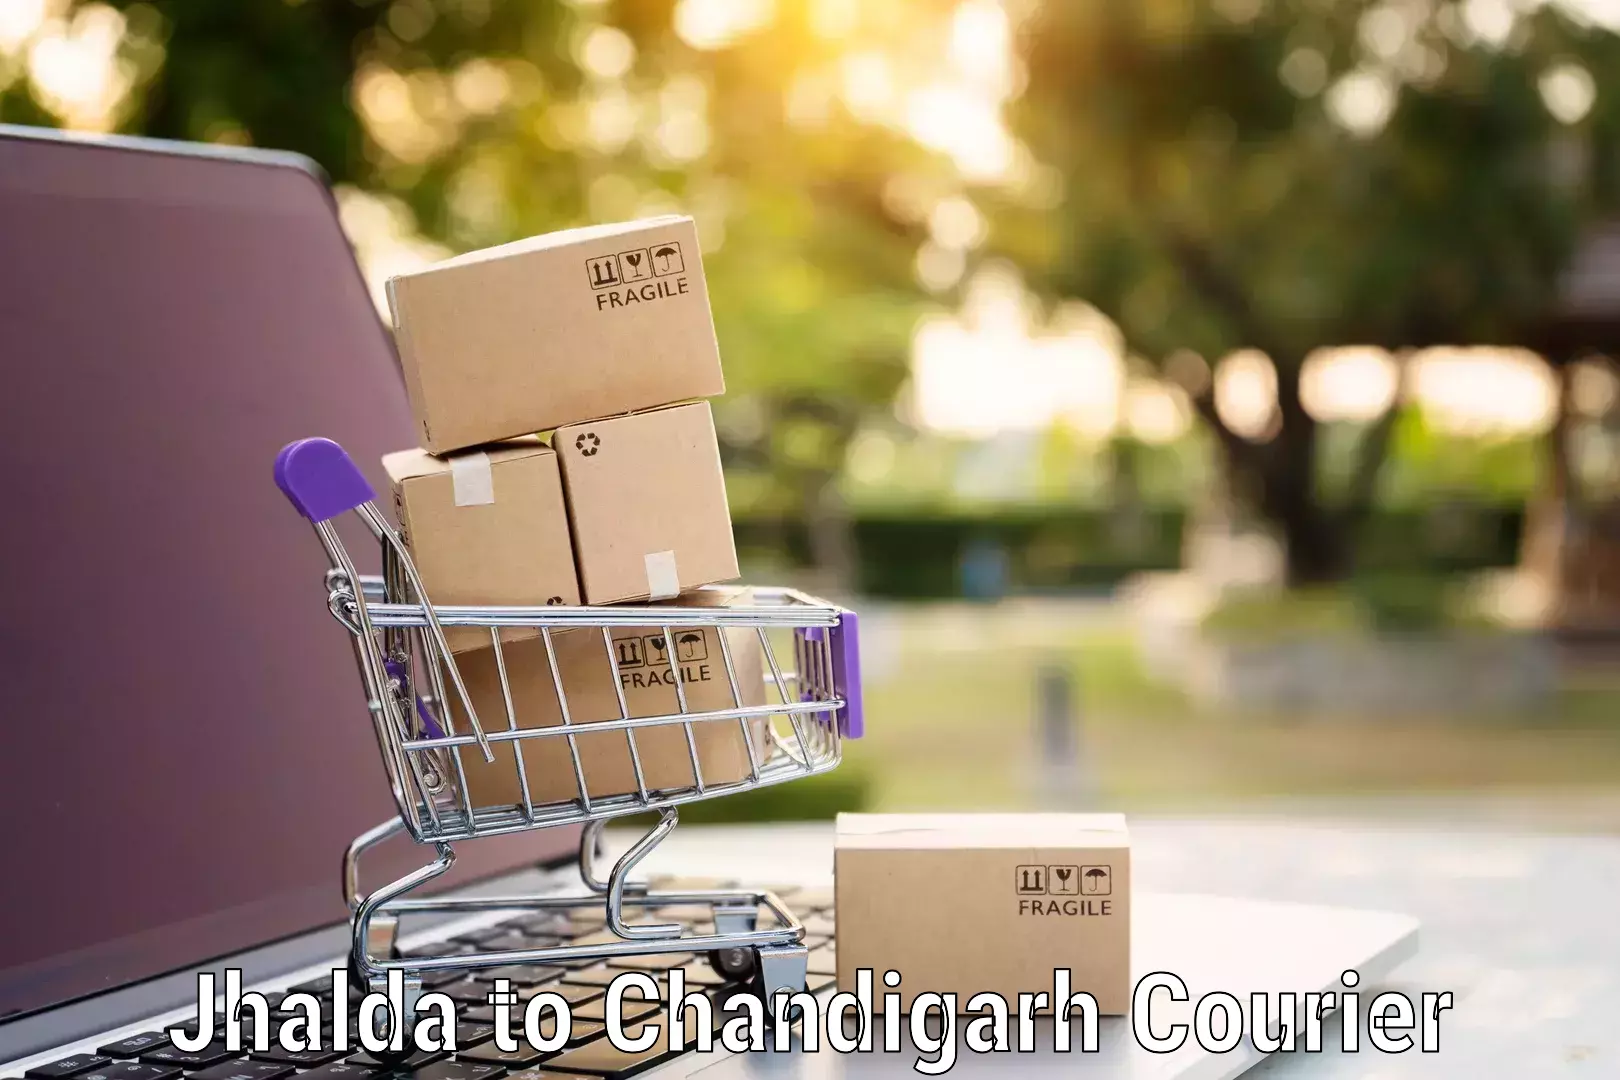 Furniture moving experts Jhalda to Chandigarh